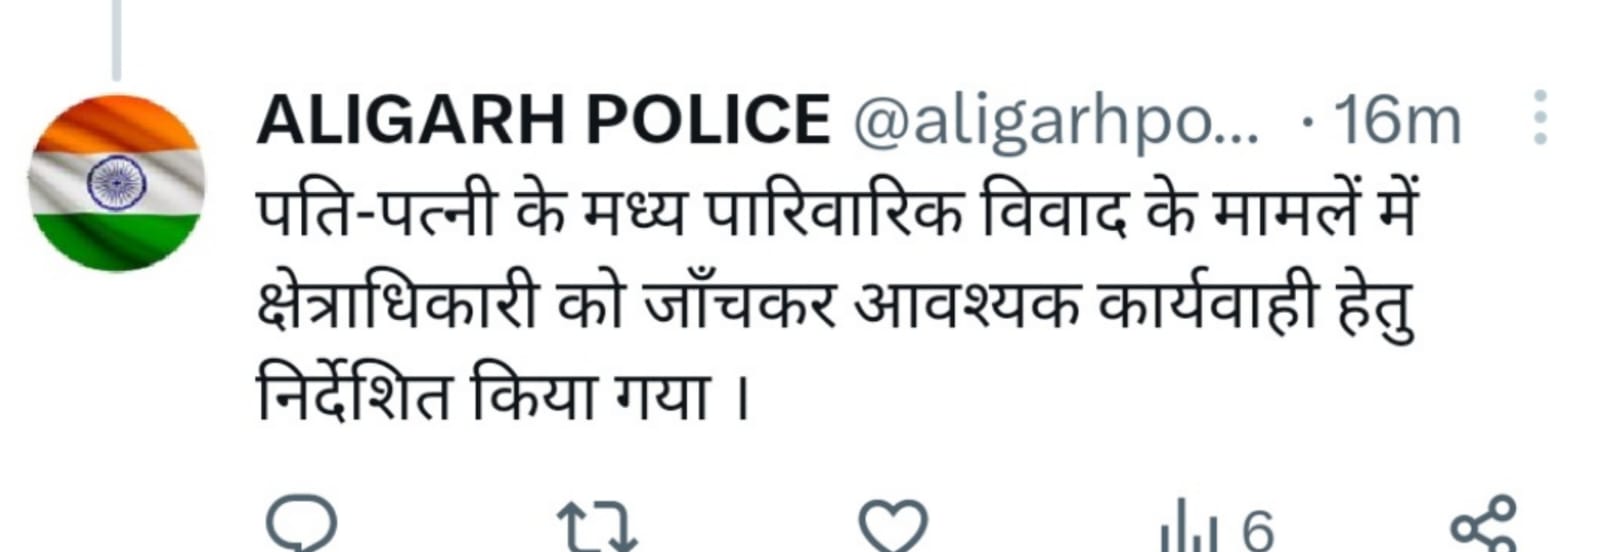 अलीगढ़ पुलिस का ट्वीट.